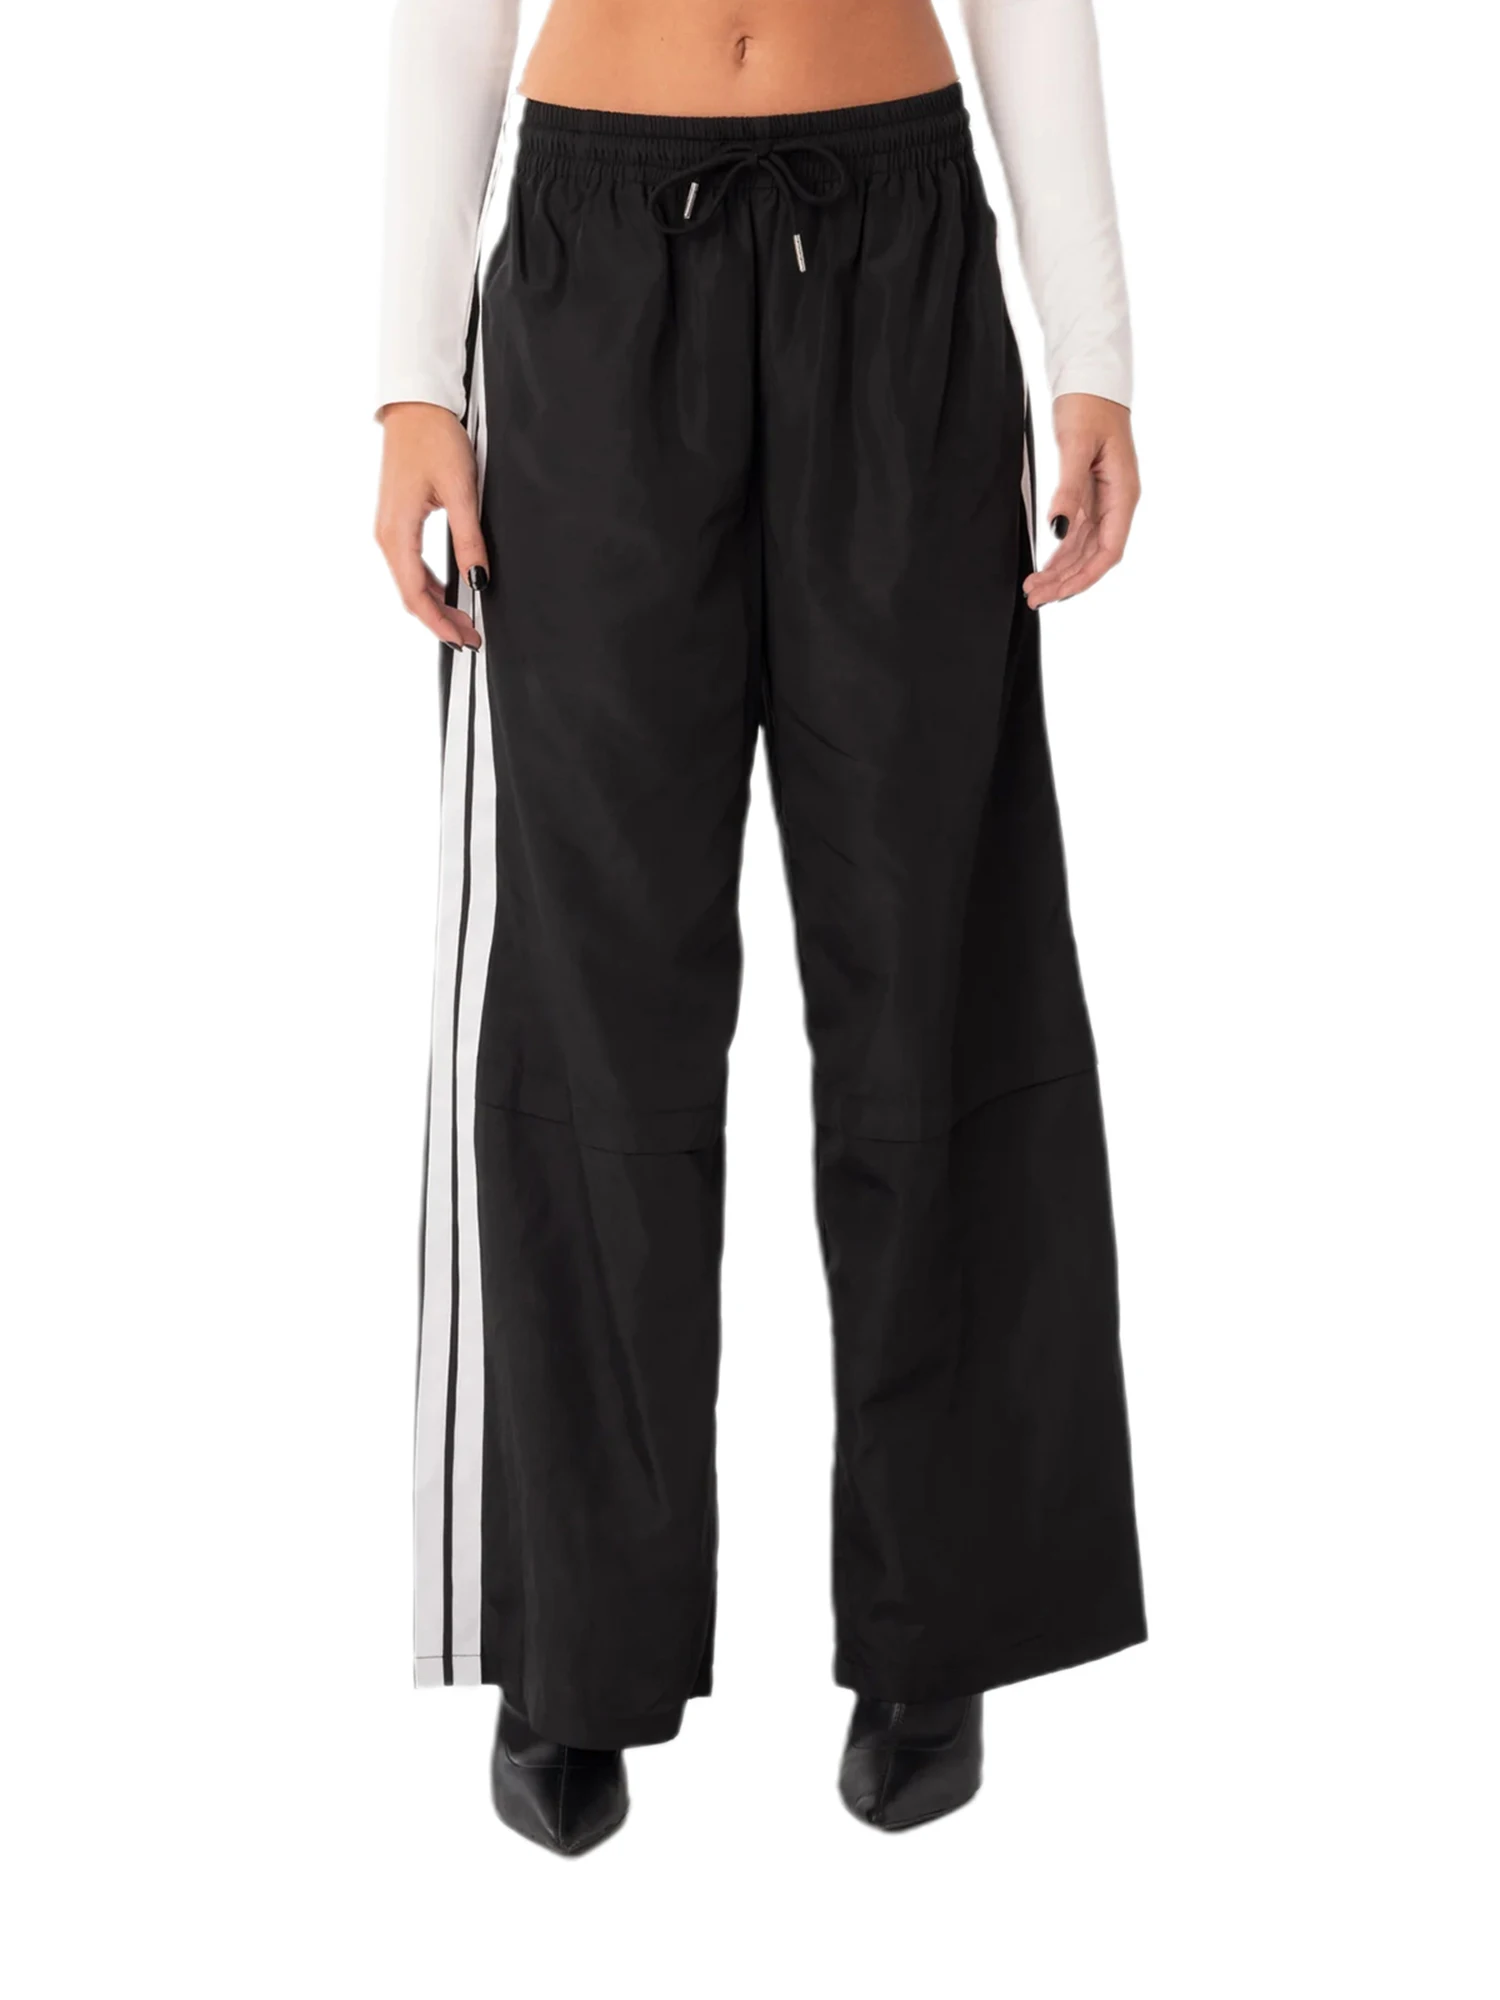 

Yoskog Pantalones casuales para mujer con cordón elástico en la cintura a rayas pantalones largos sueltos ropa de calle